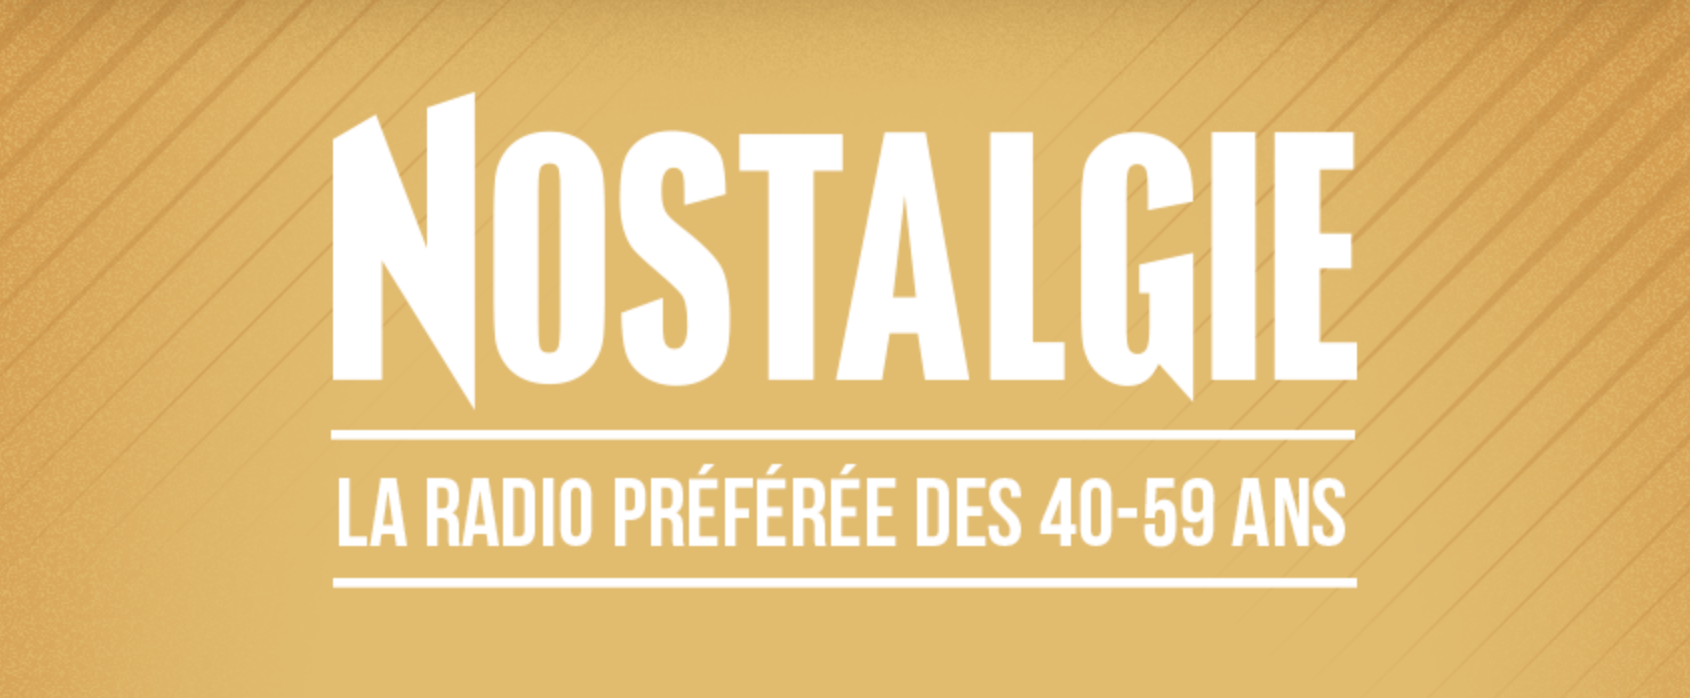 CIM Radio : "une vague atypique" pour Nostalgie Belgique